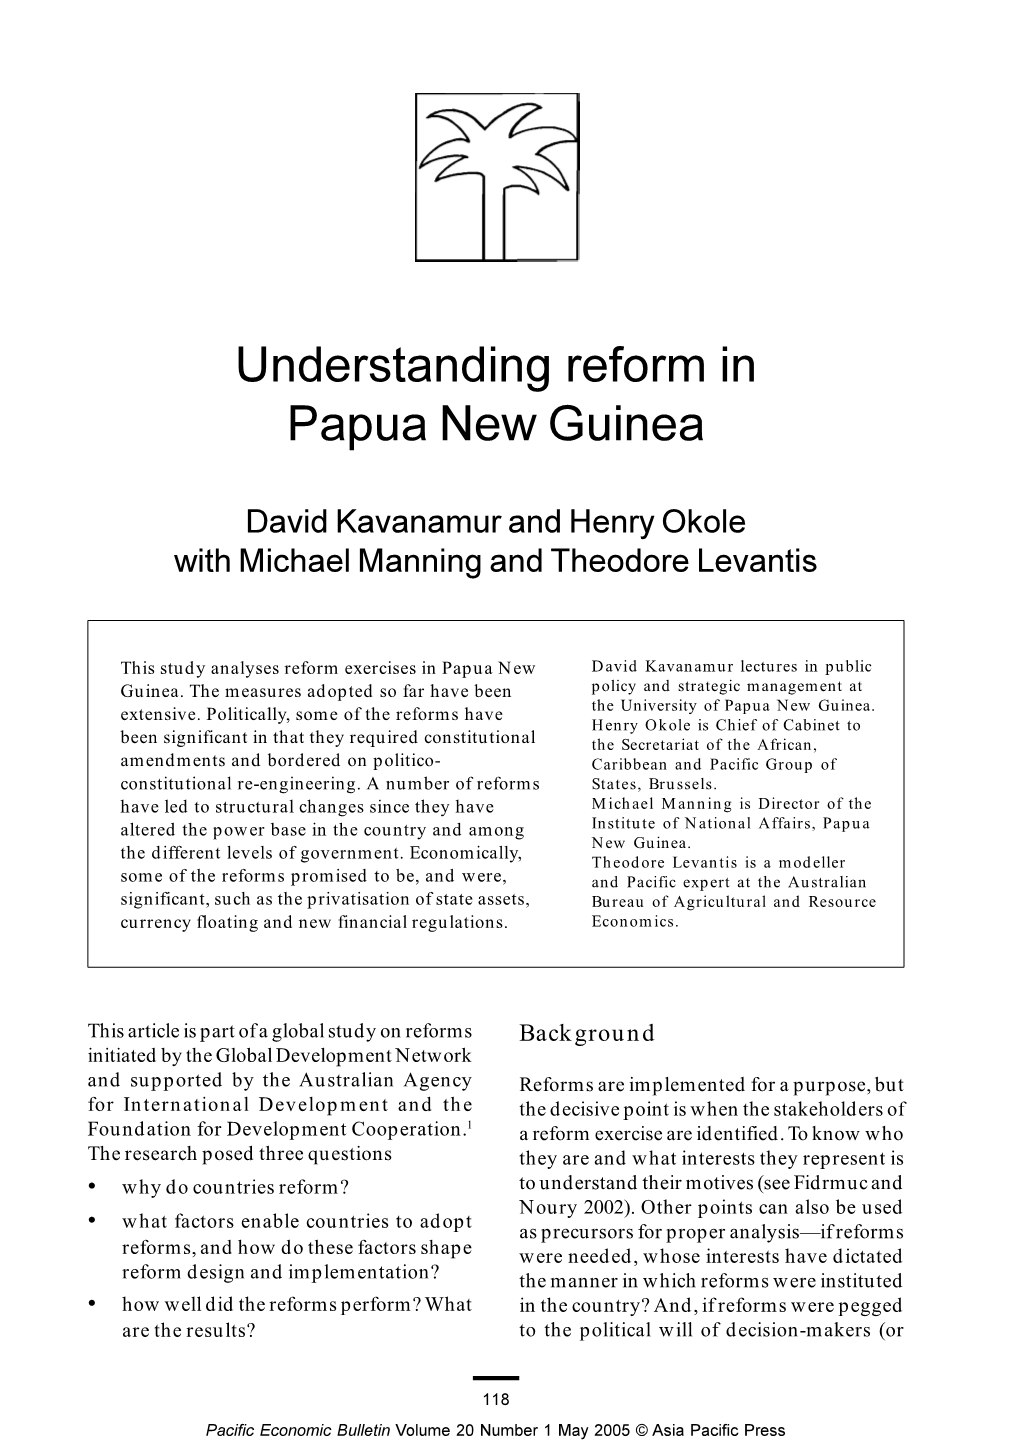 Understanding Reform in Papua New Guinea